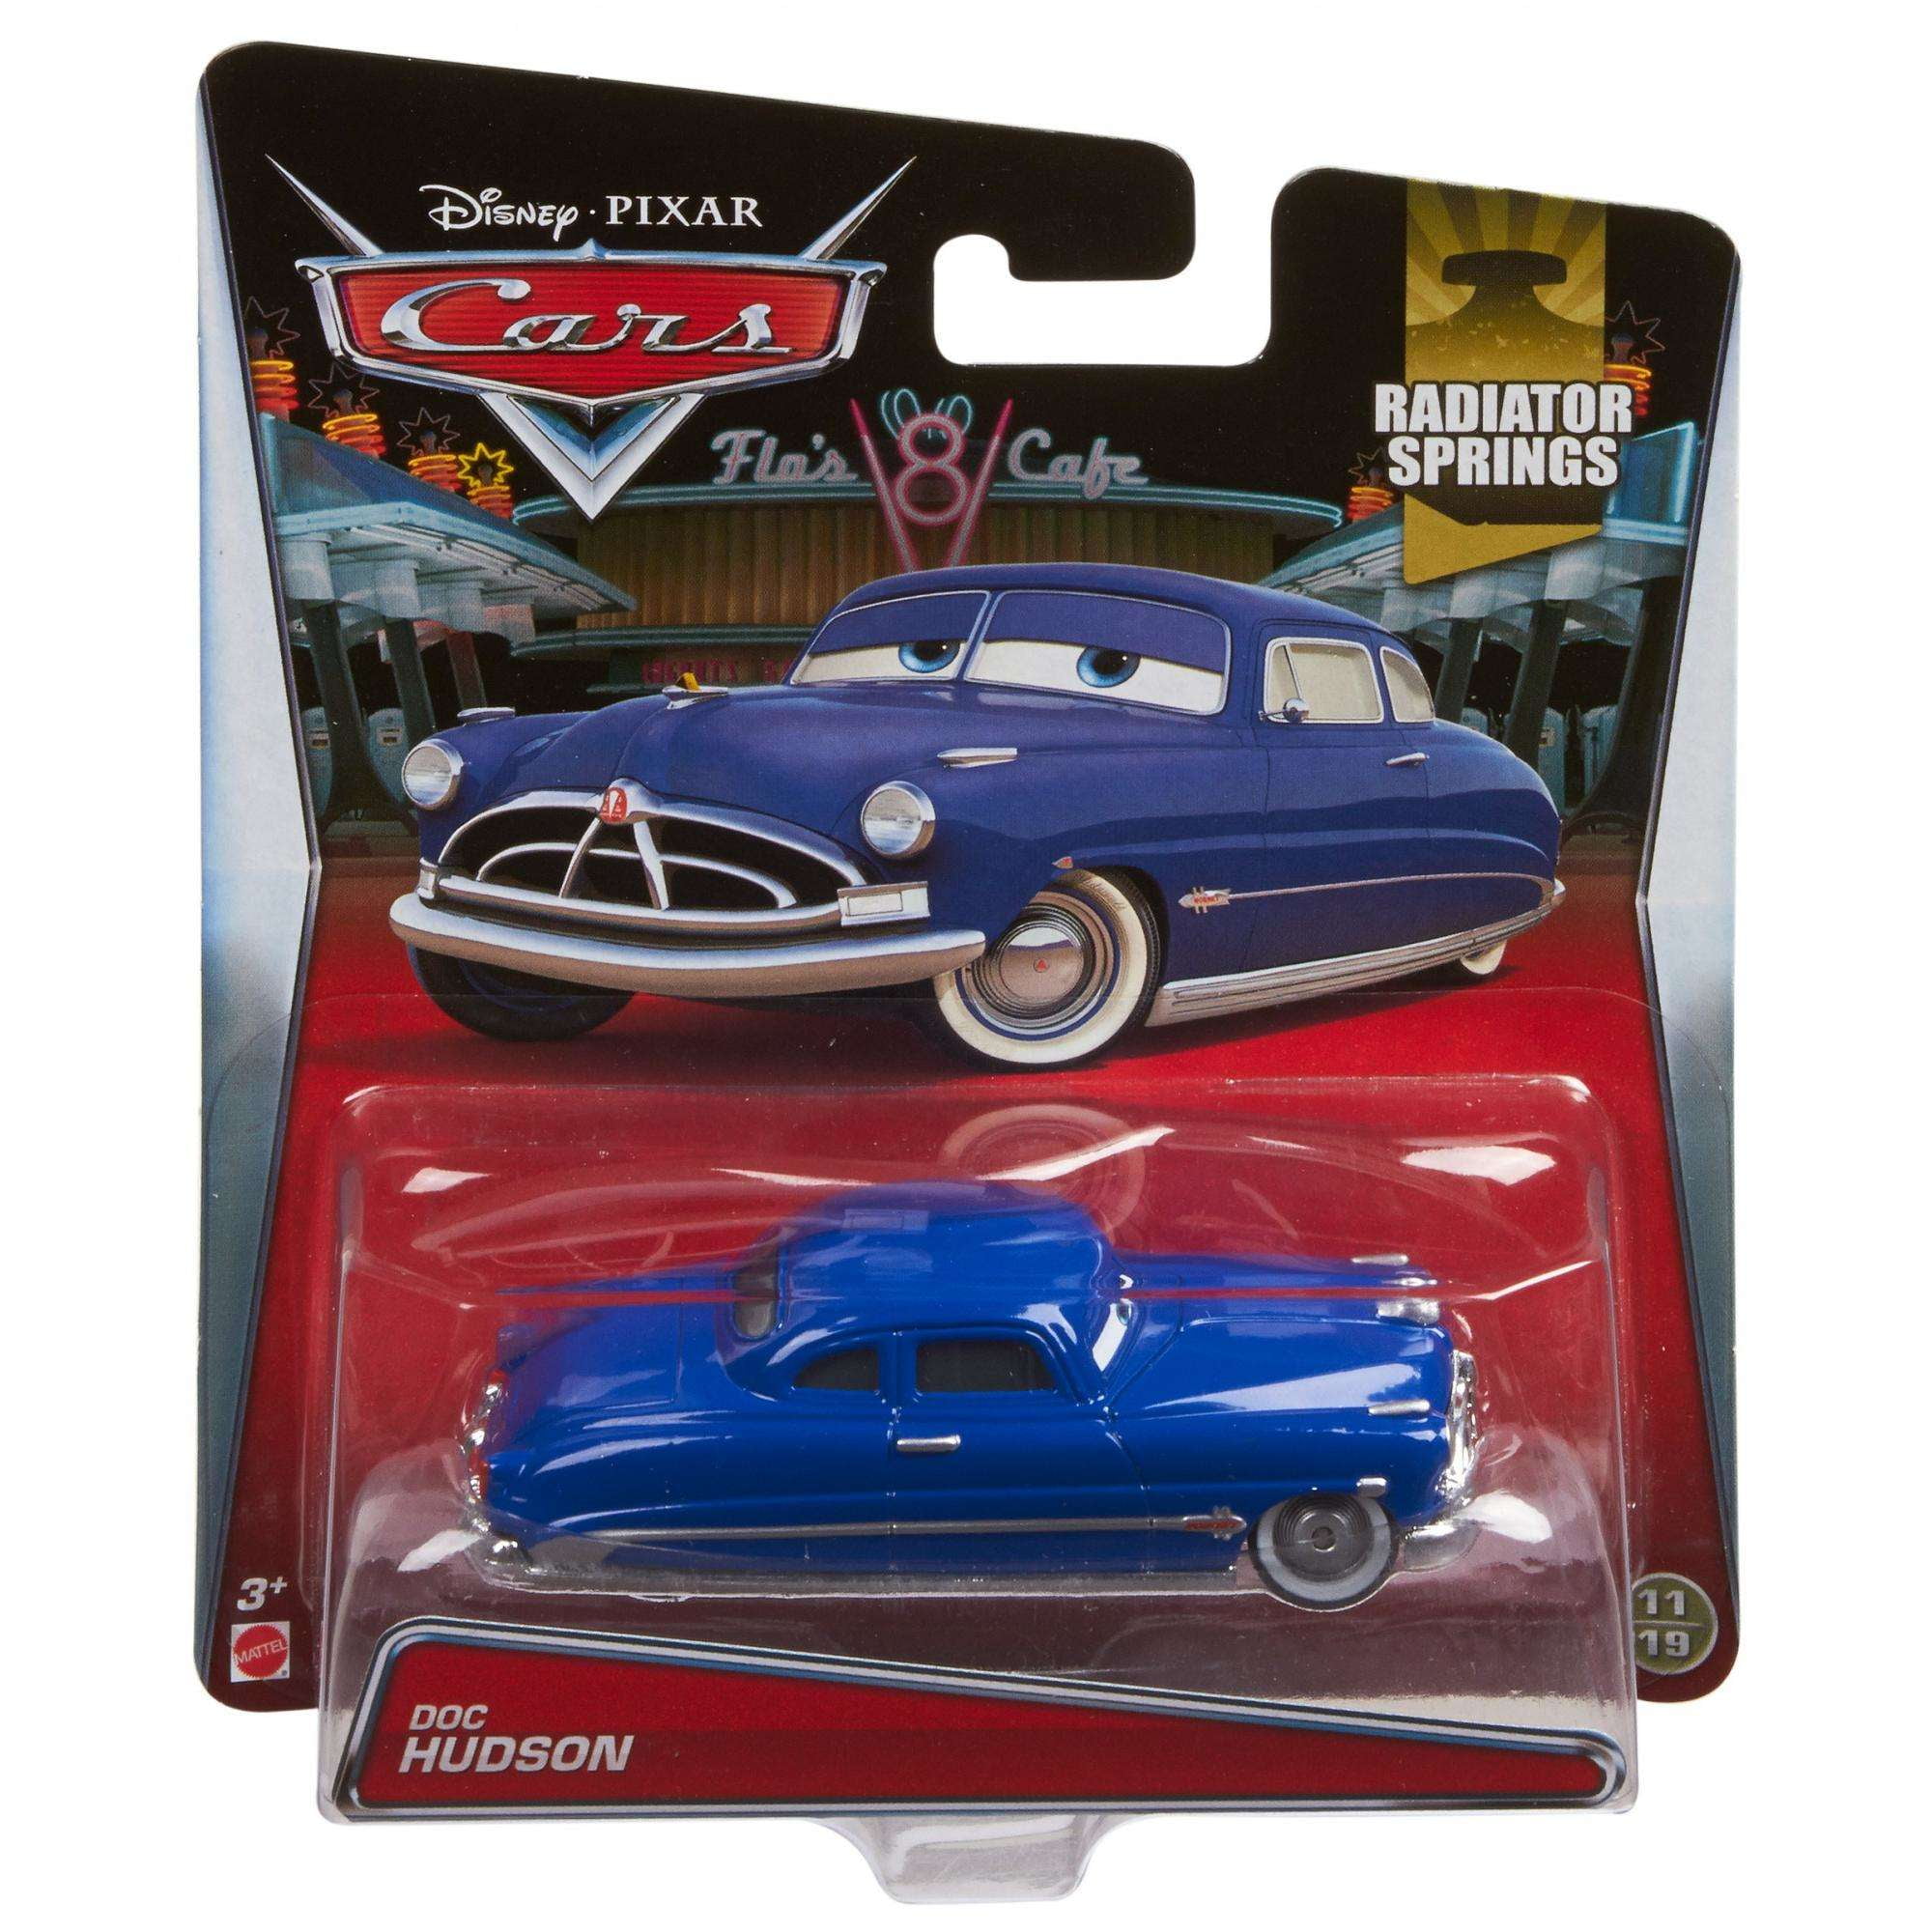 Doc Hudson #11/19 1:55 Scale 2015 Radiator Springs Die-Cast Vehicle Disney/Pixar Cars 